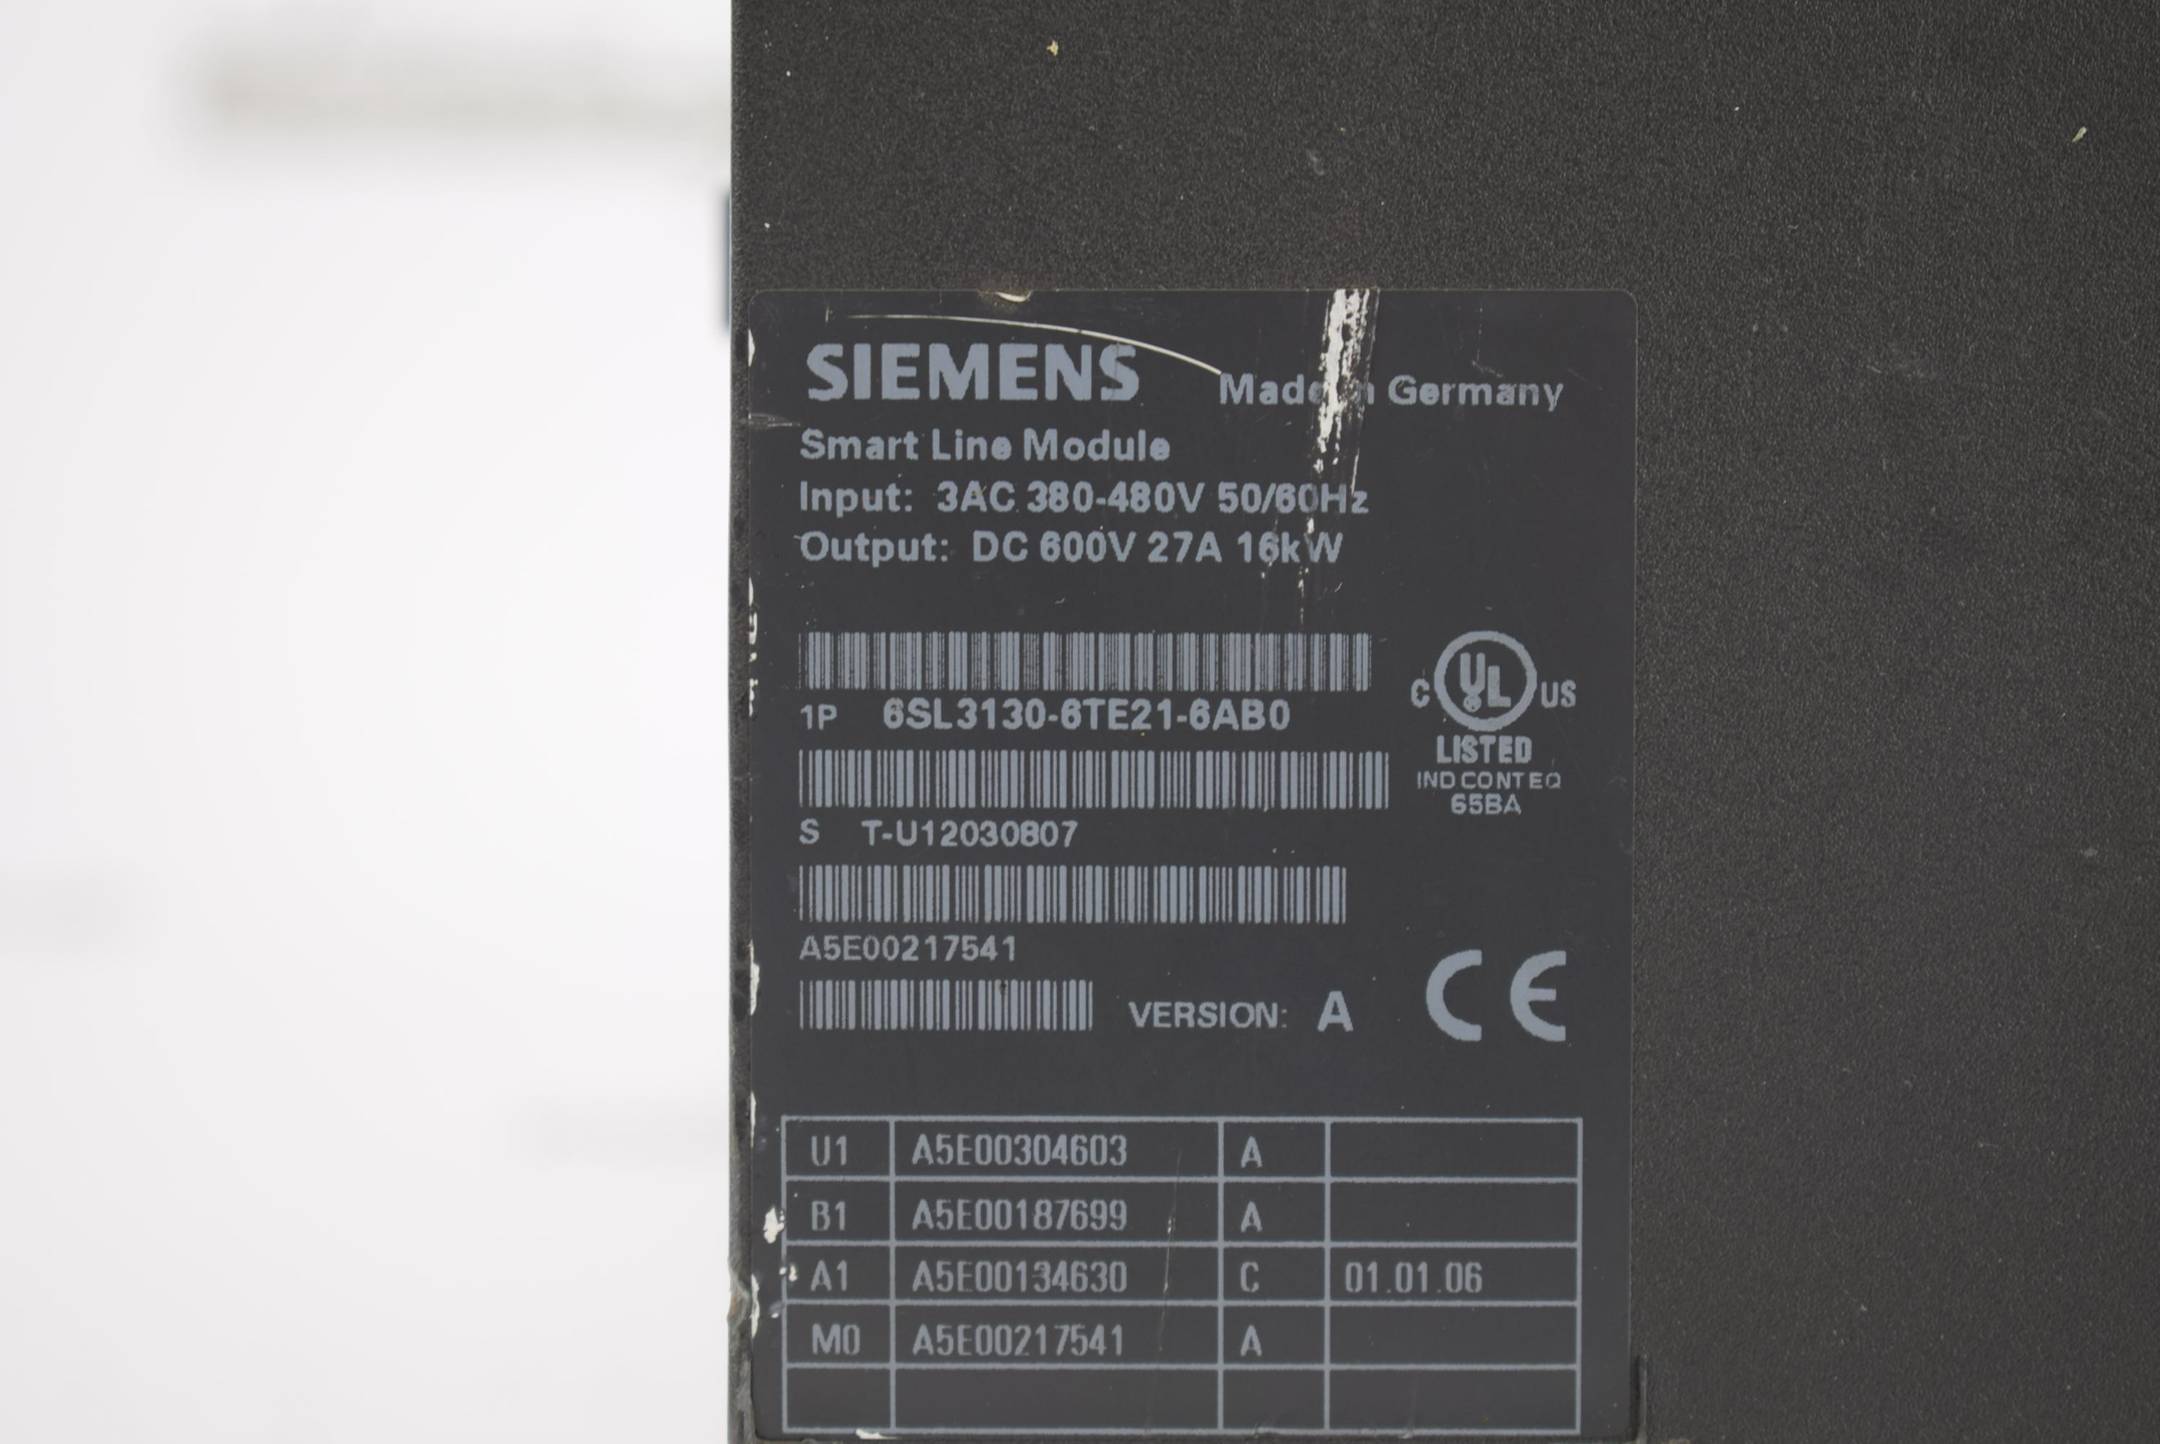 Siemens sinamics Smart Line 6SL3130-6TE21-6AB0 ( 6SL3 130-6TE21-6AB0 ) Ver A